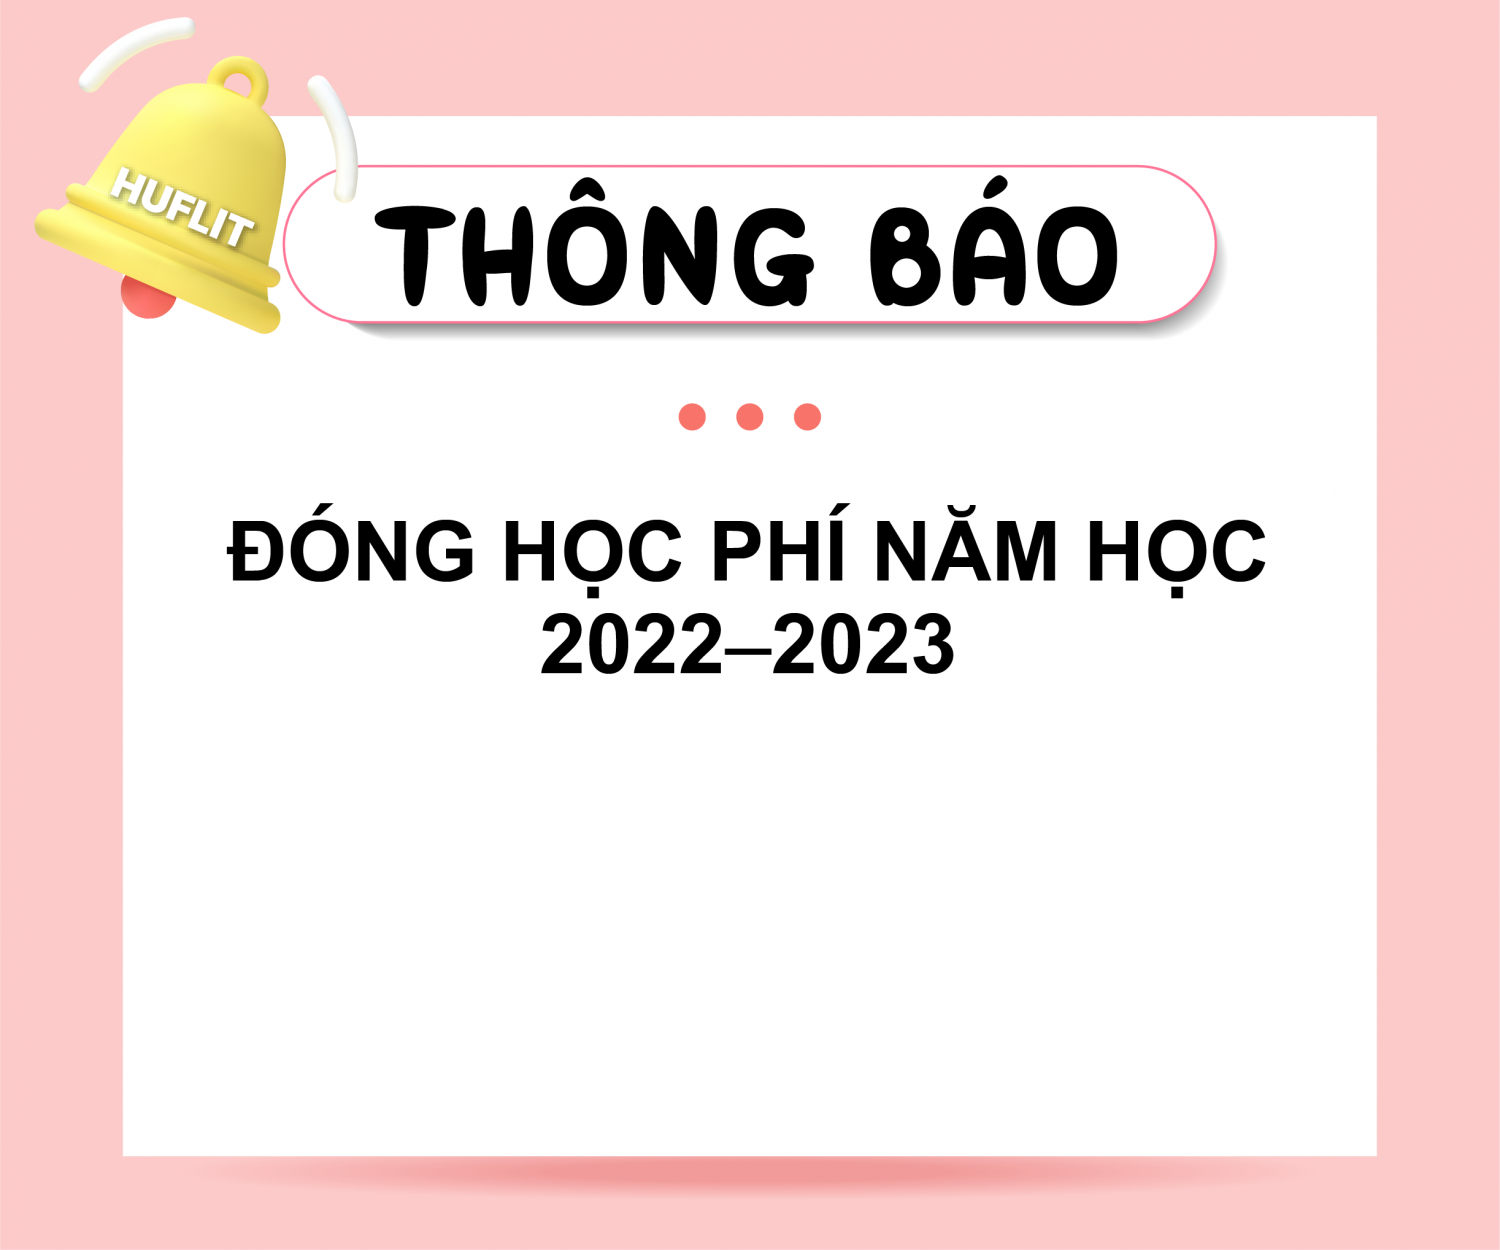 16.6.2022 tb dong hoc phi